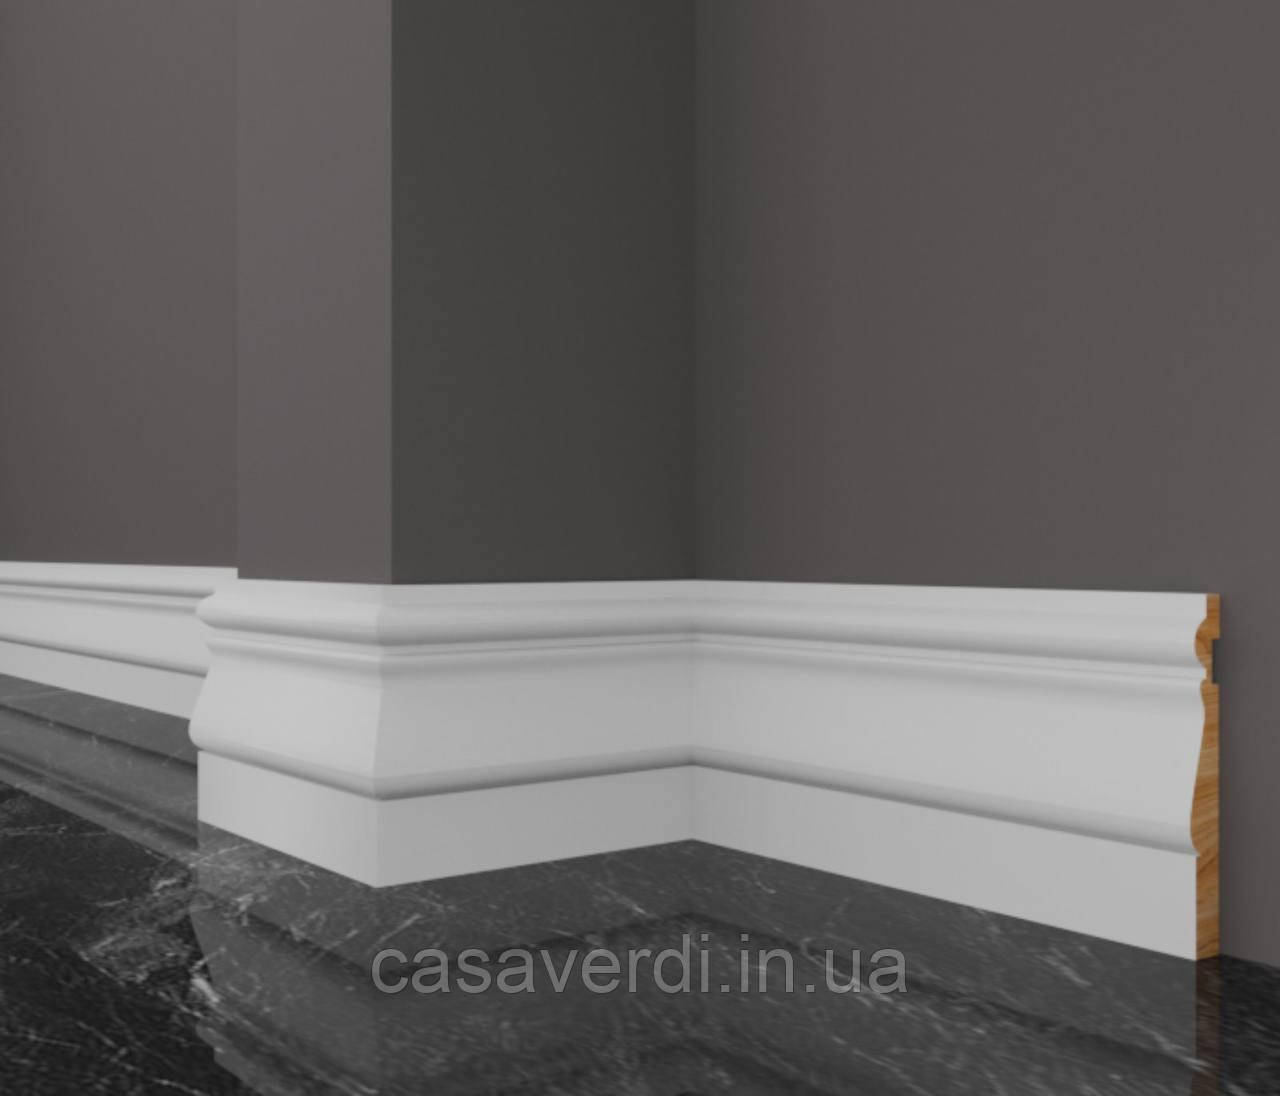 Плінтус Casa Verdi Classic 10 см білий з масиву вільхи